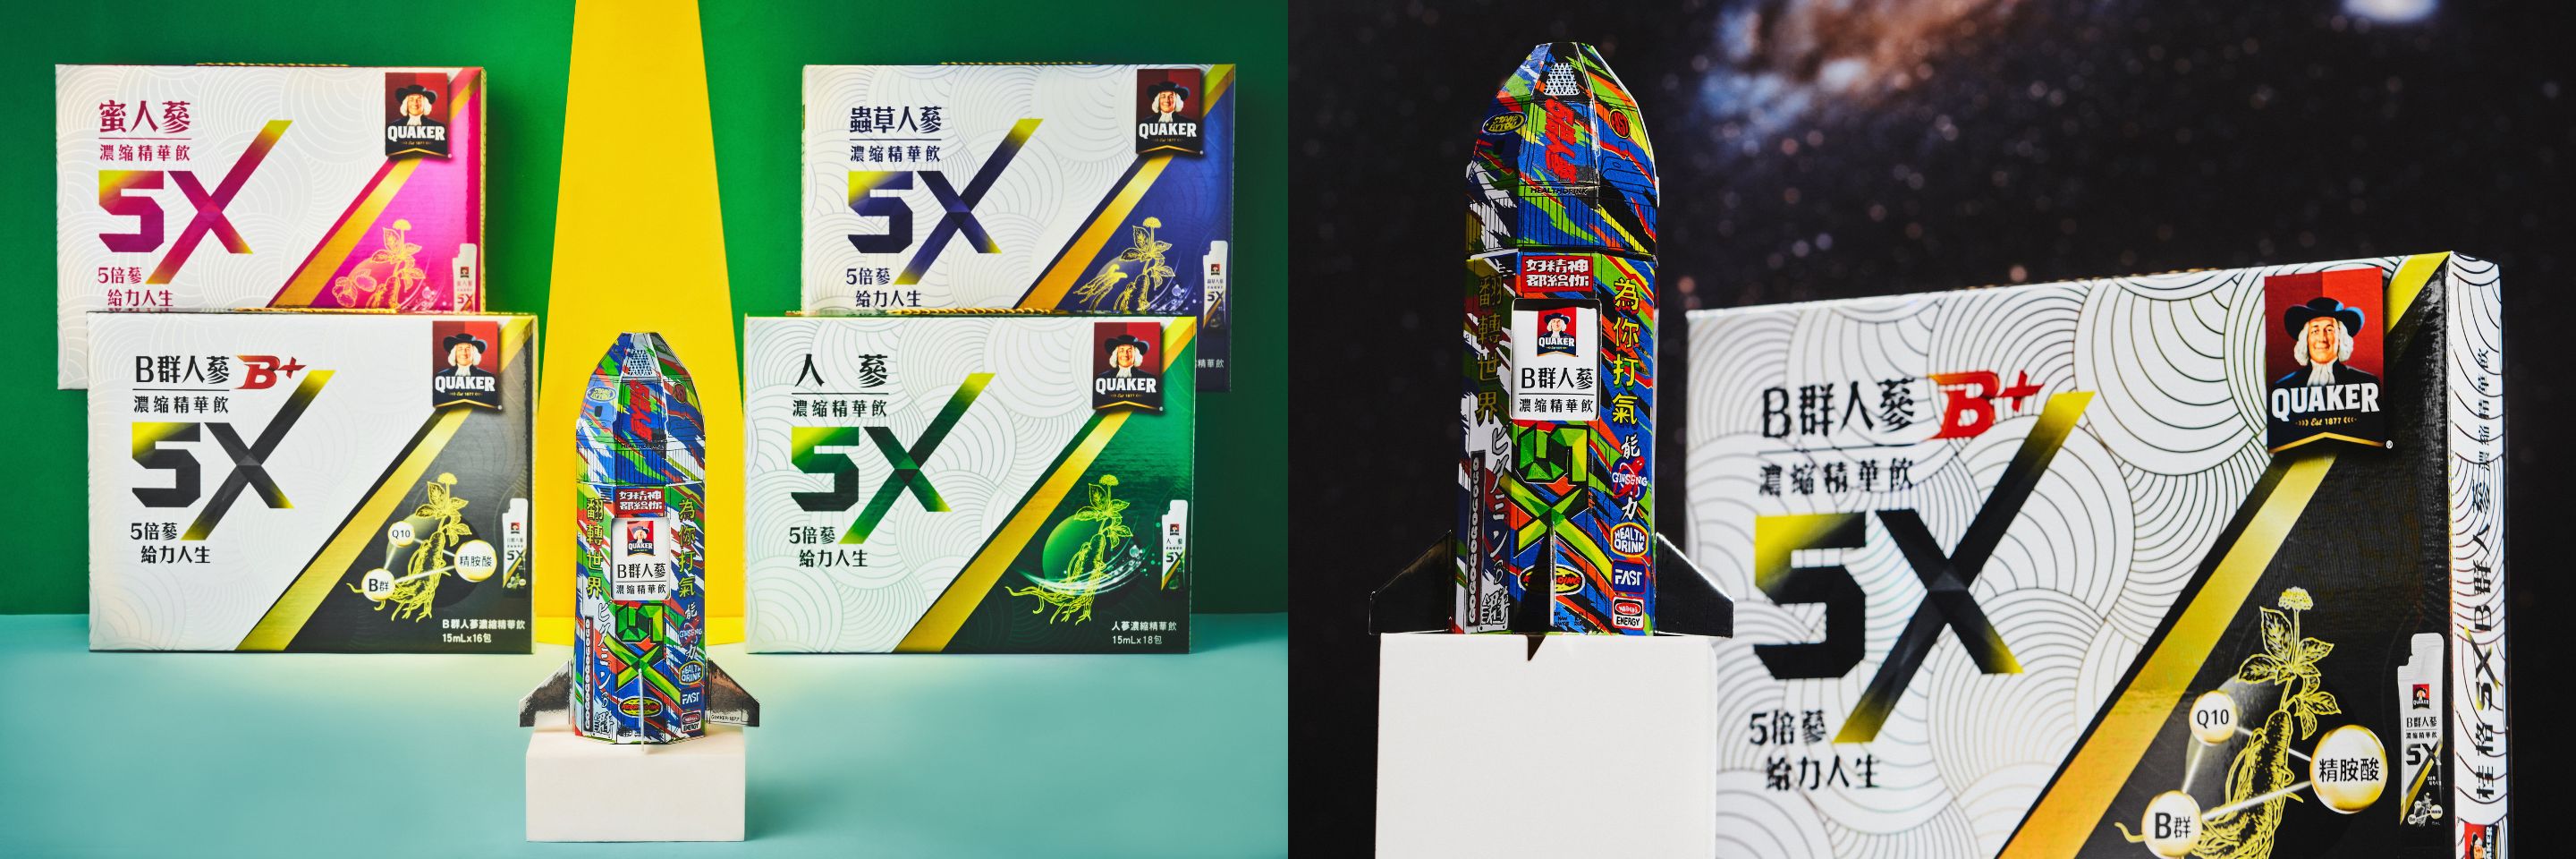 這是來自宇宙的能量！「桂格 5X B 群人蔘濃縮精華飲」聯名藝術家李漢強祭出限量火箭禮盒， 讓你好精神不斷電的最佳秘密武器！